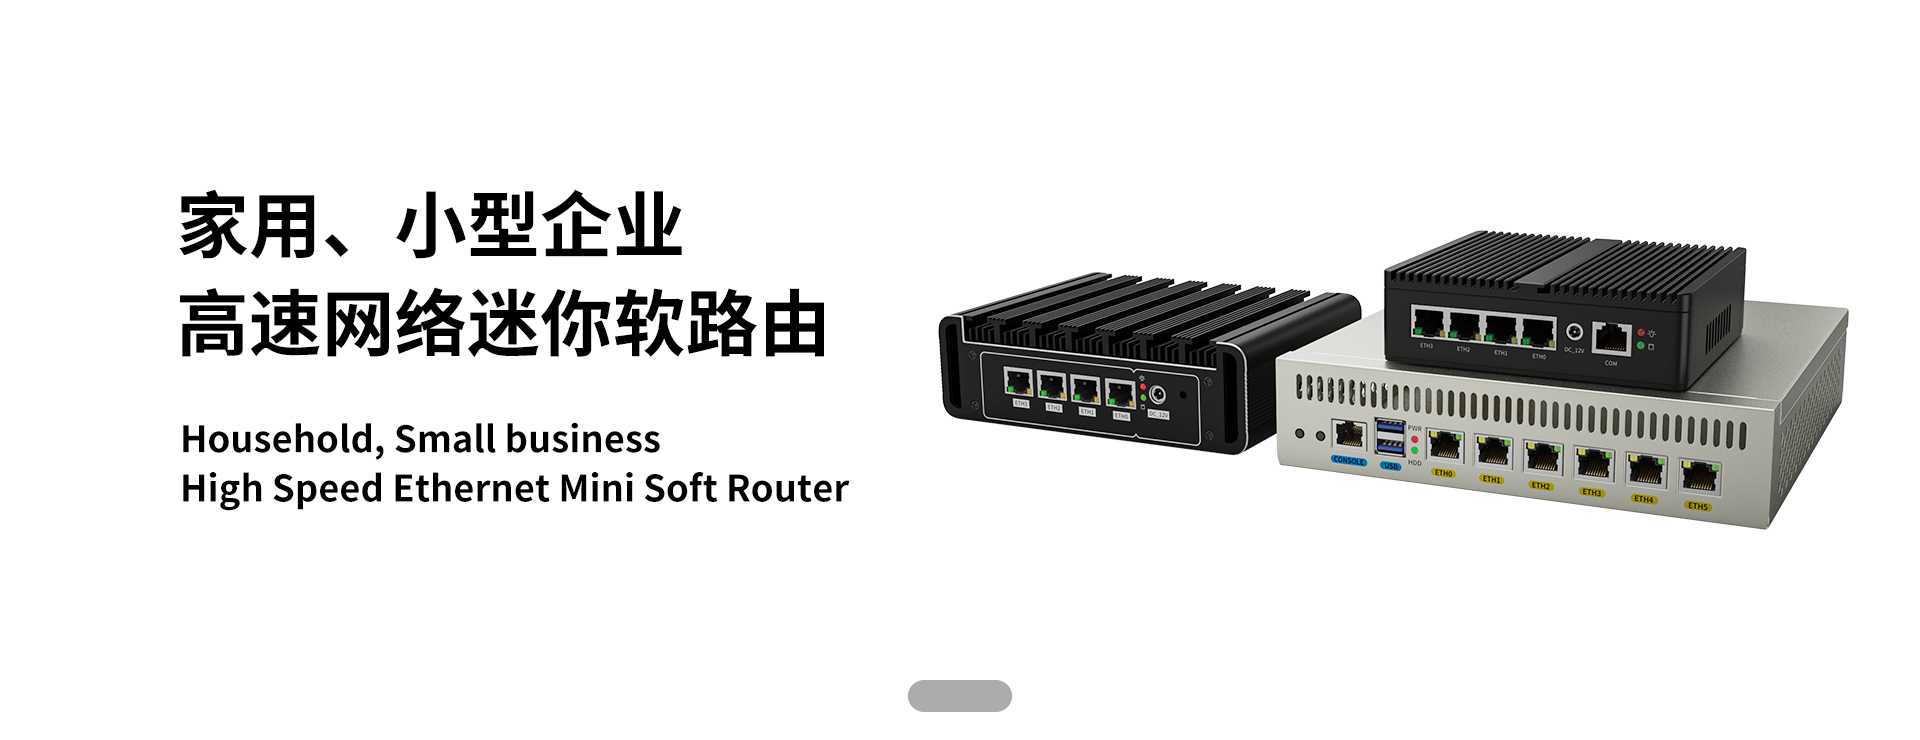 Mini Soft Router